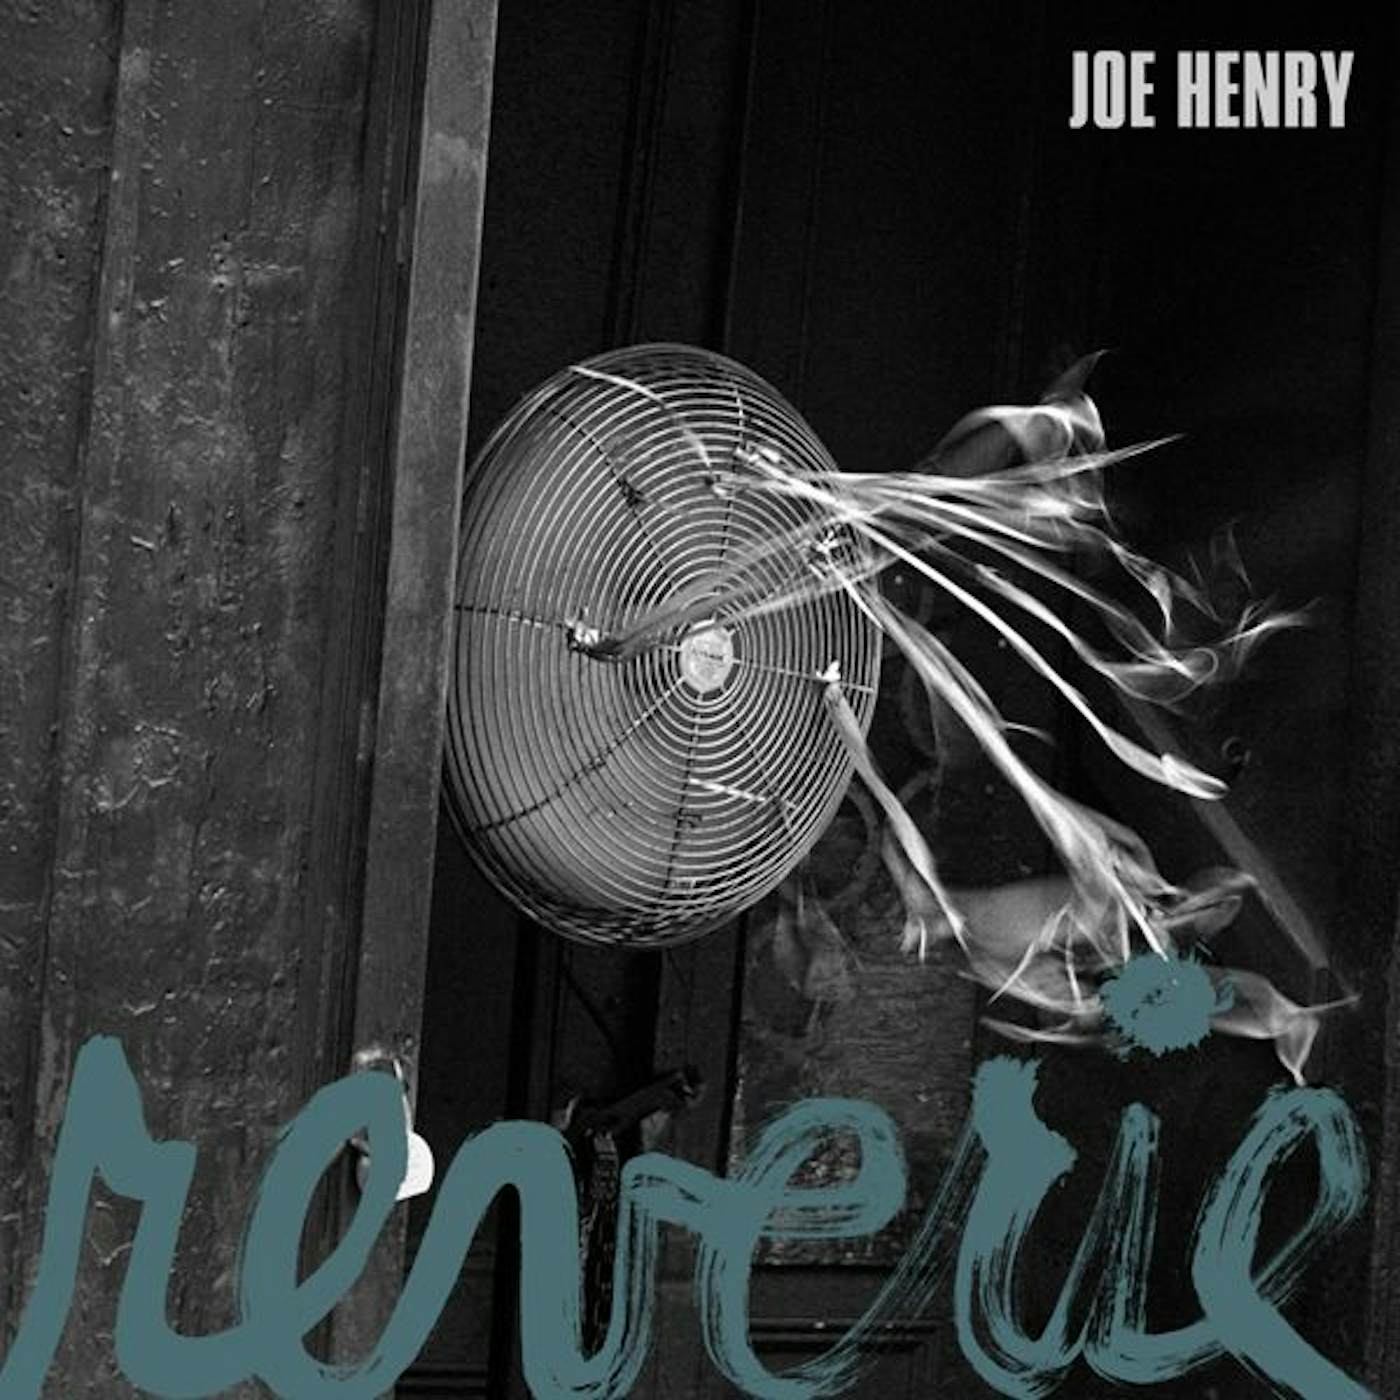 Joe Henry REVERIE CD